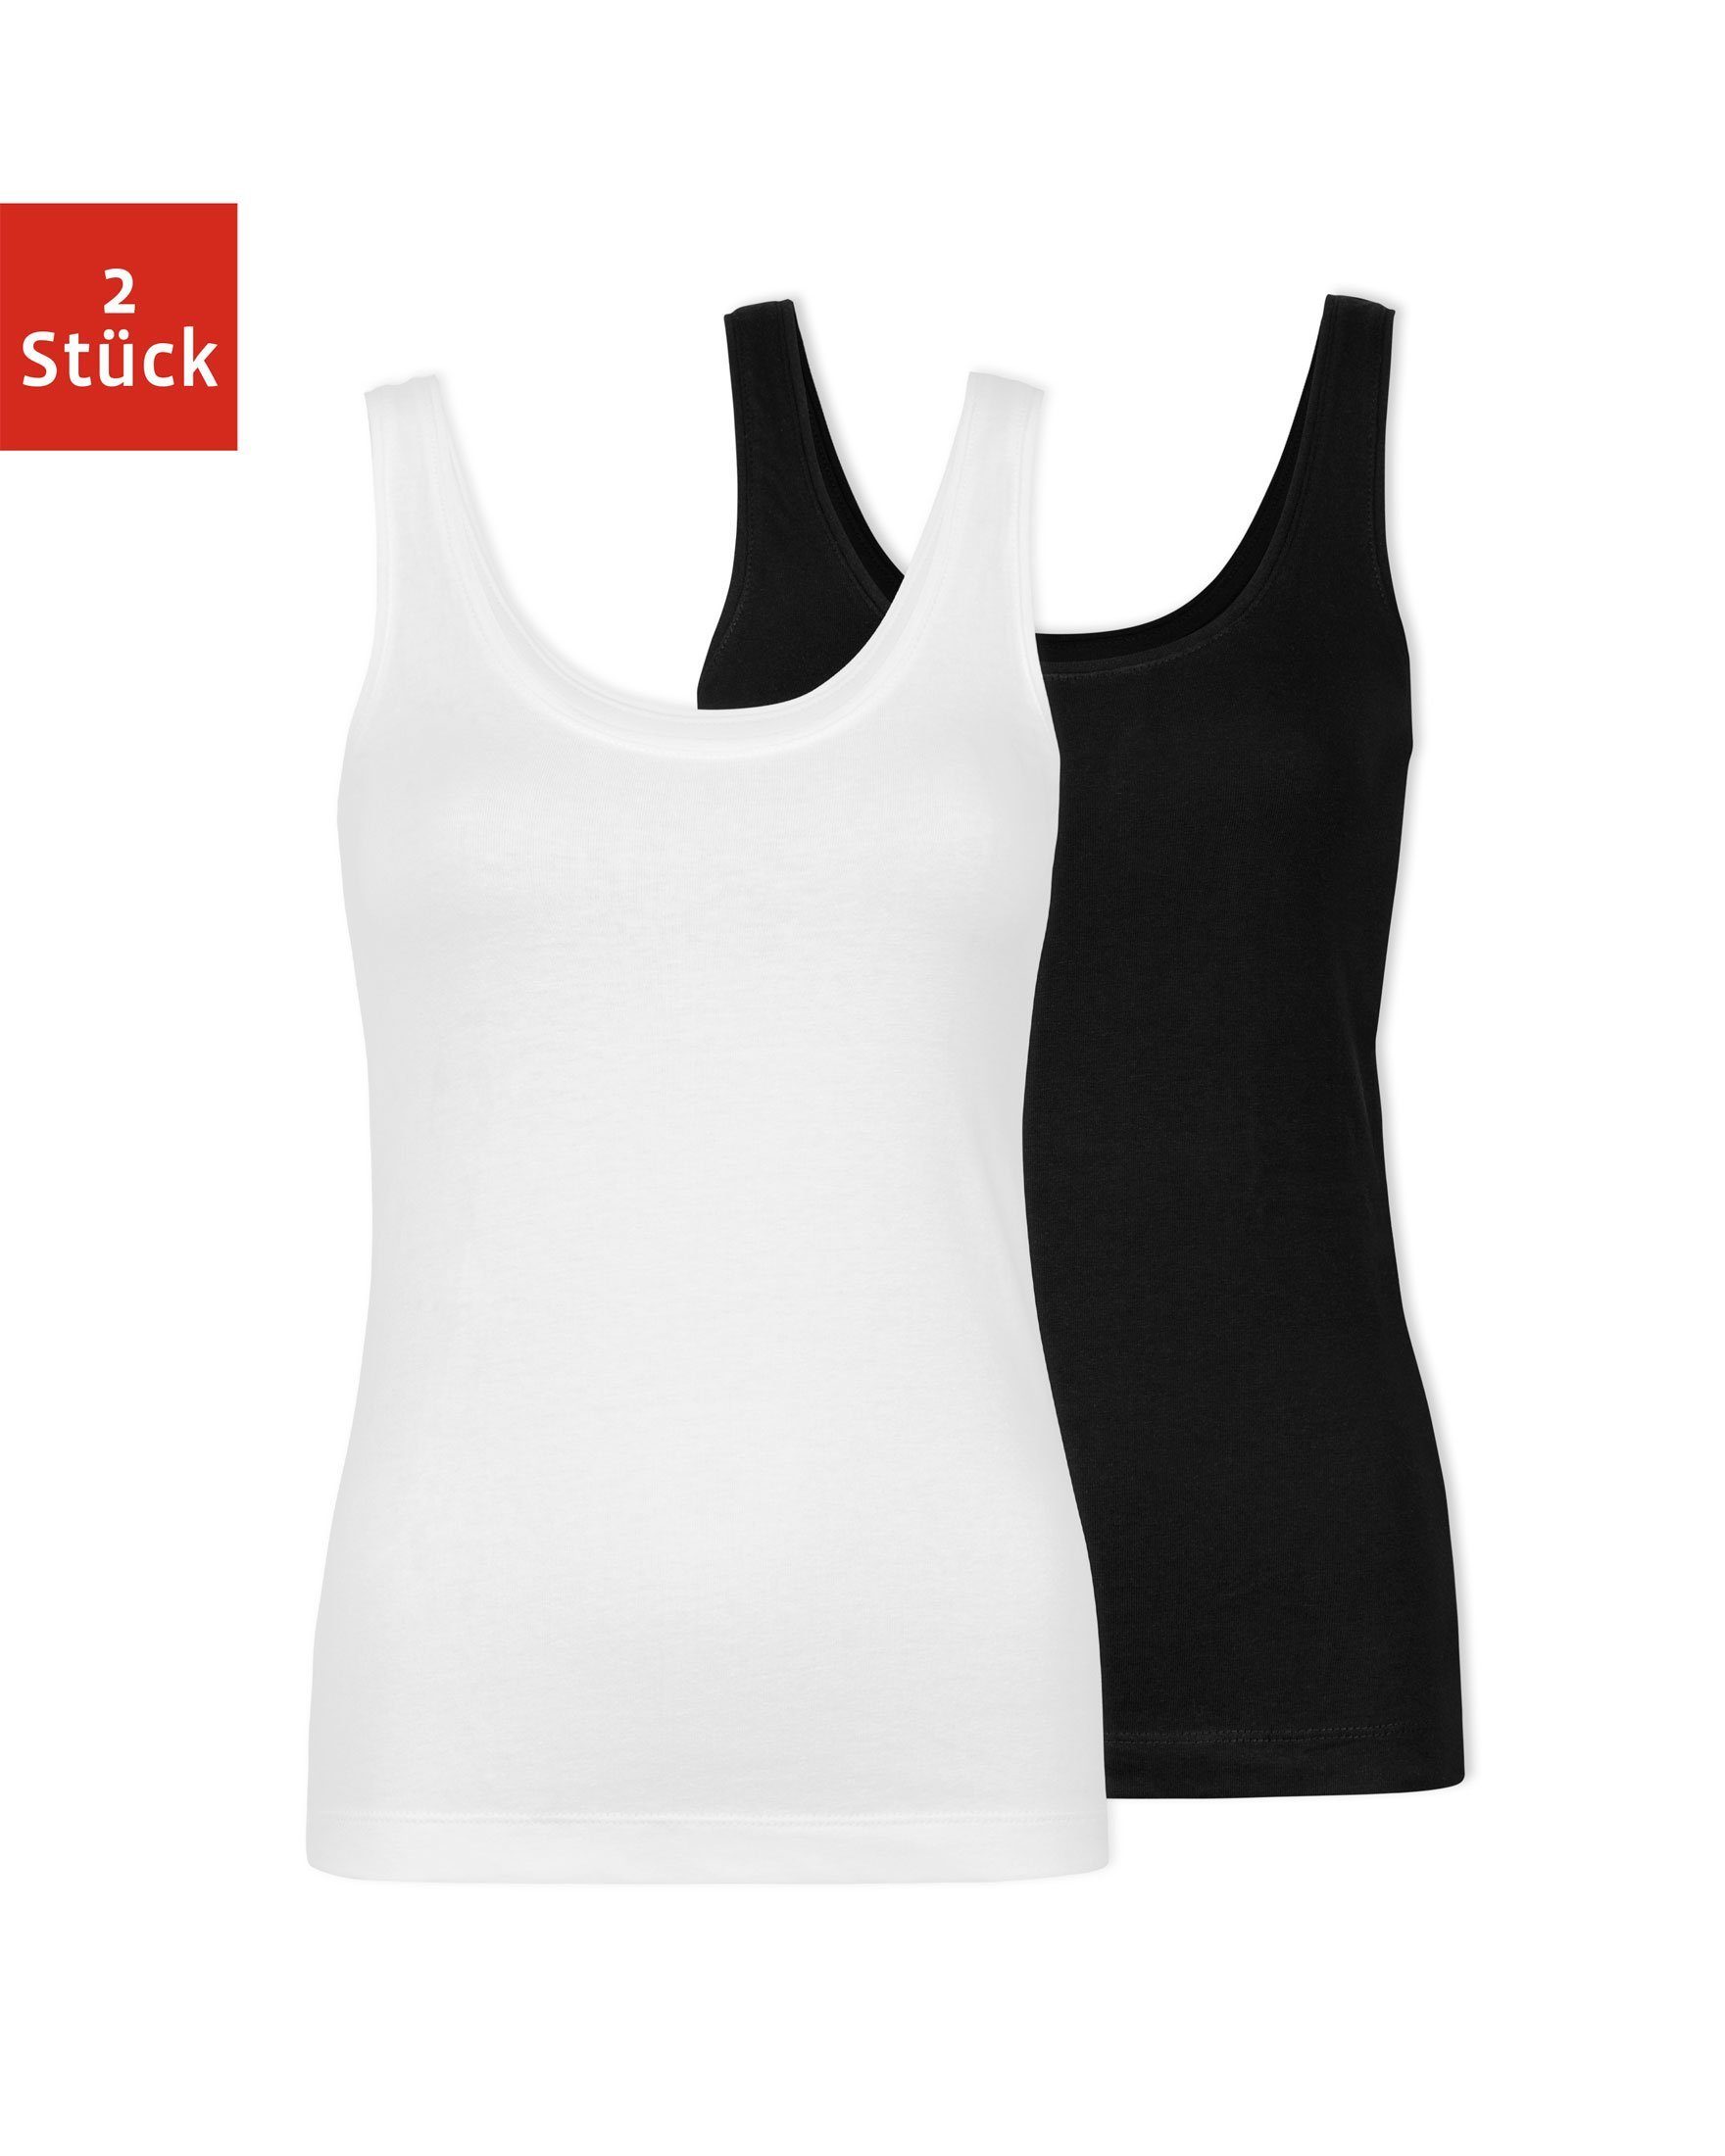 SNOCKS Tanktop mit Trägern Schwarz-Weiß für Top (2-tlg) bequem, jedes Basic breiten Bio-Baumwolle, Damen Outfit perfektes aus